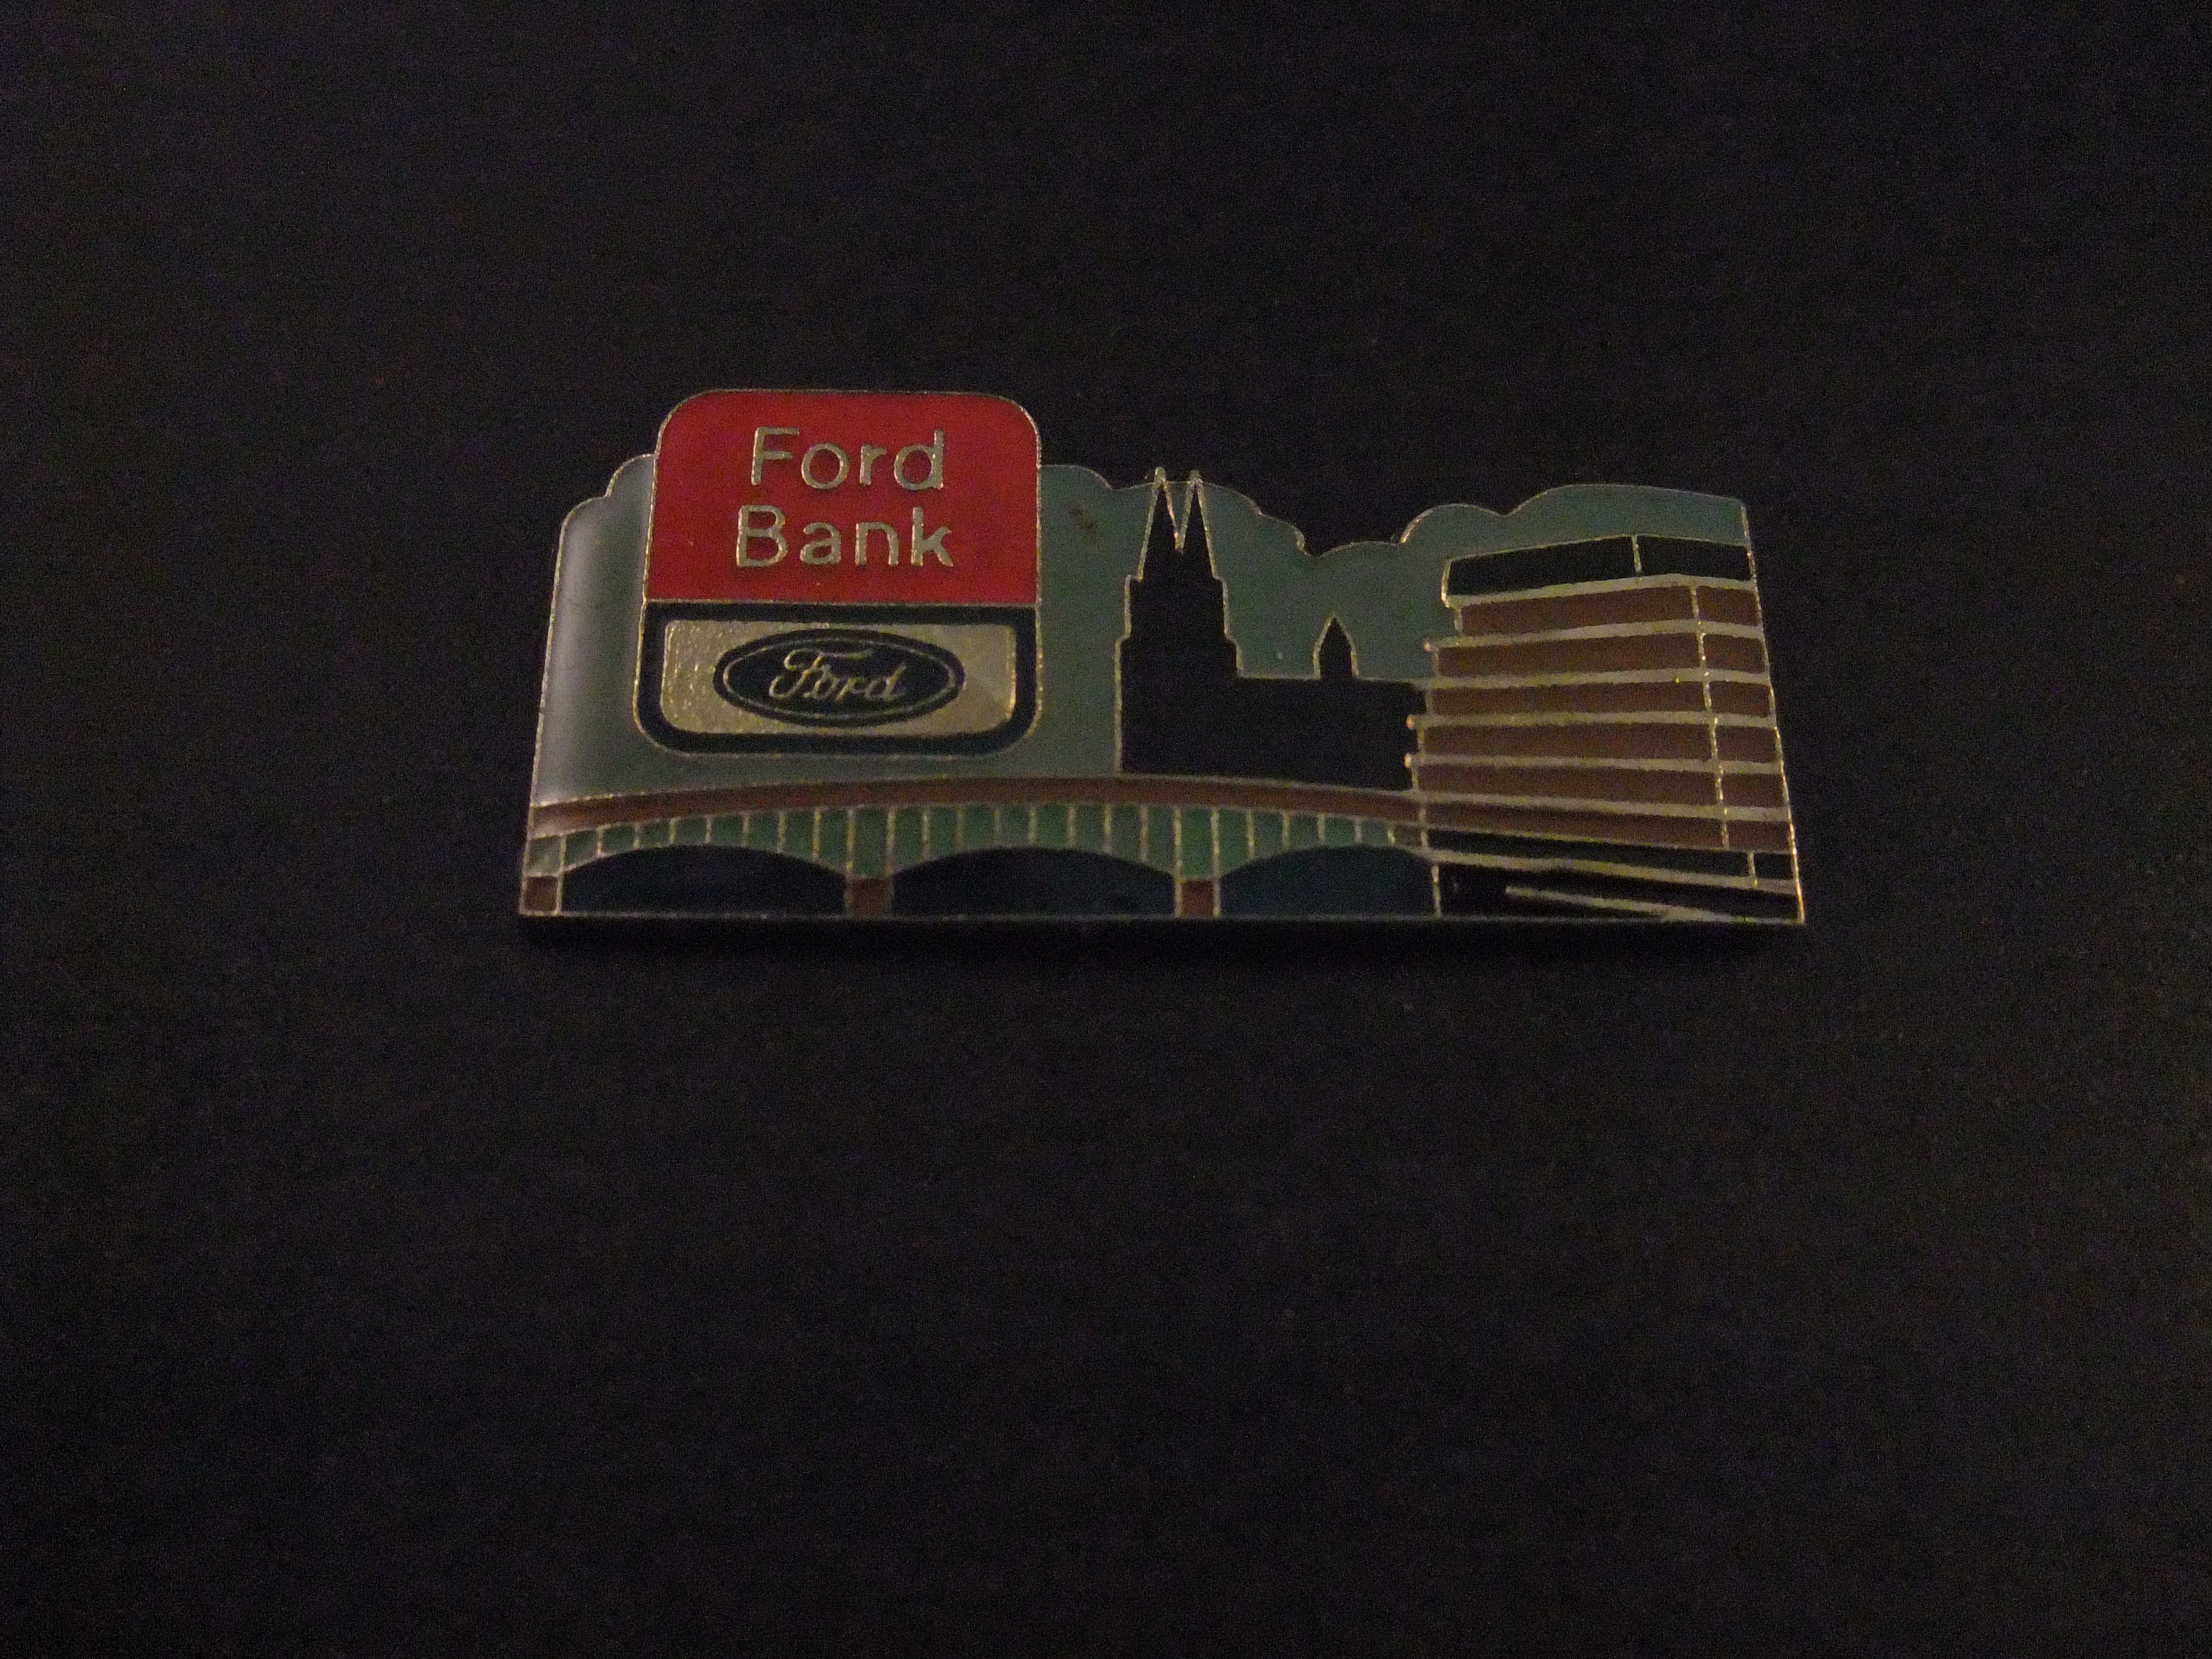 Ford Bank Ford Credit autofinanciering (afbeelding  van de stad Keulen Duitsland)